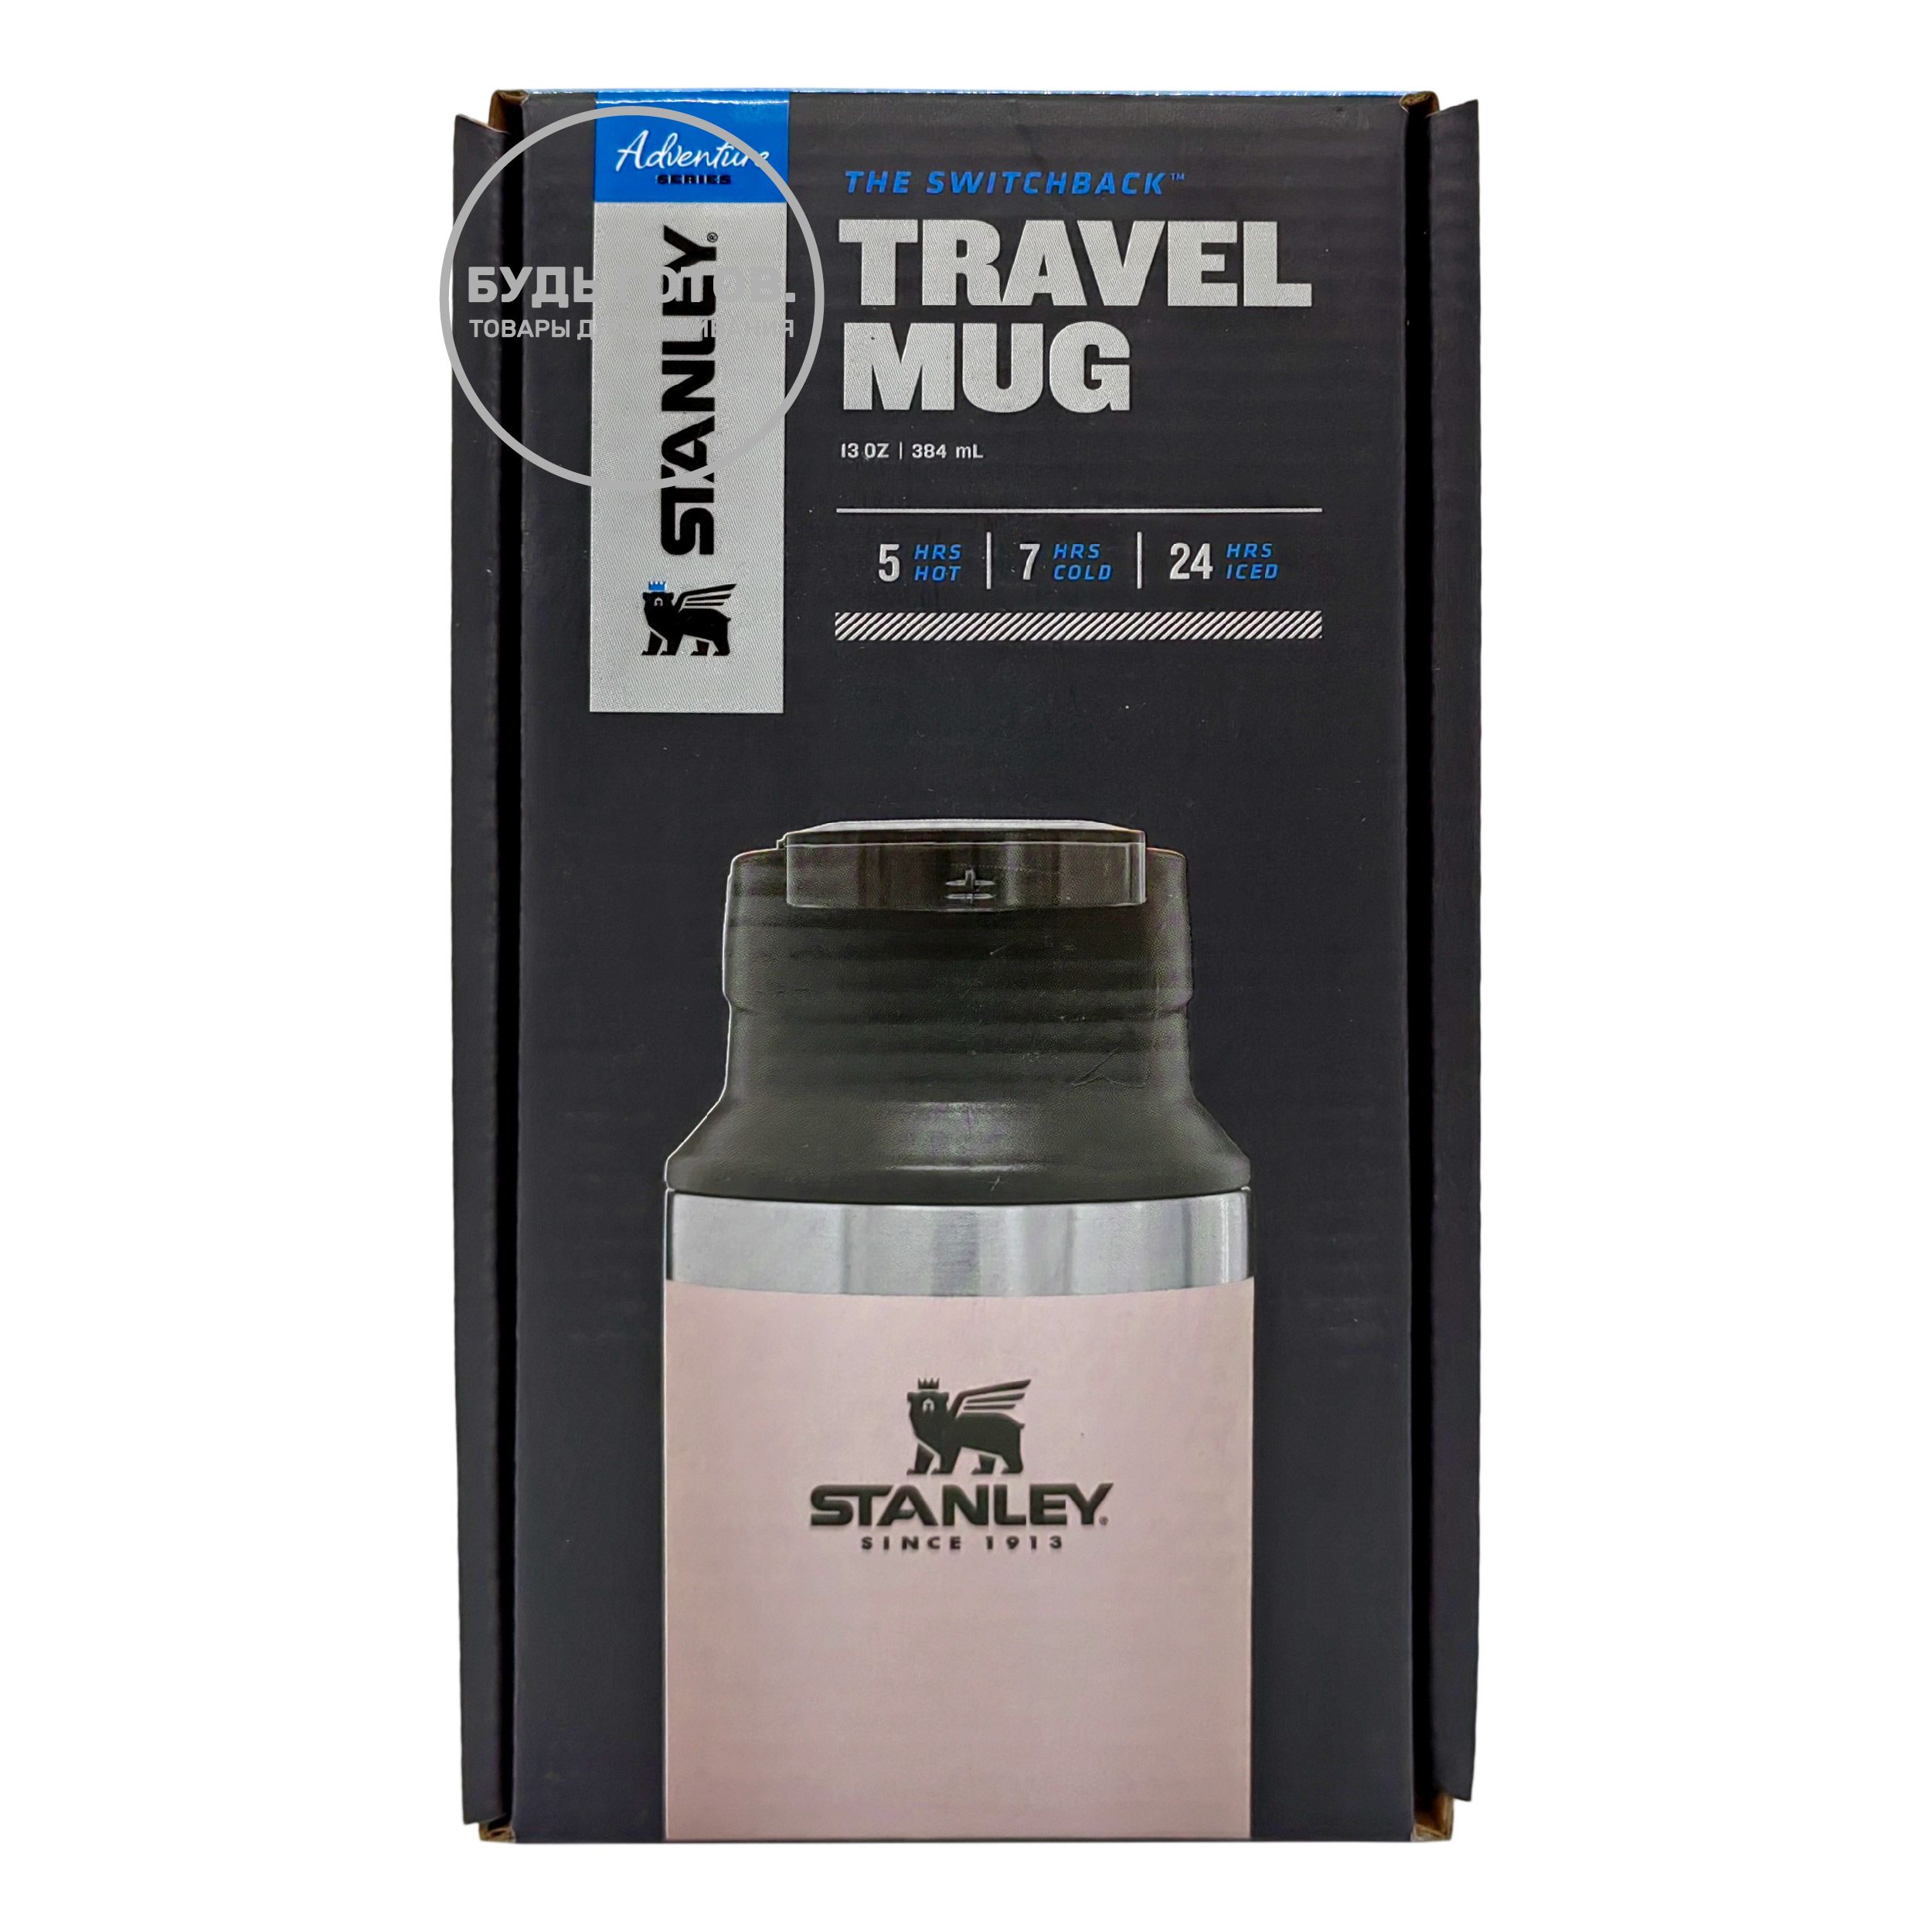 Термокружка STANLEY Adventure Switchback Travel Mug 10-02284-048 розовая 384mL с доставкой по России и в Казахстан | BreadyФото 2